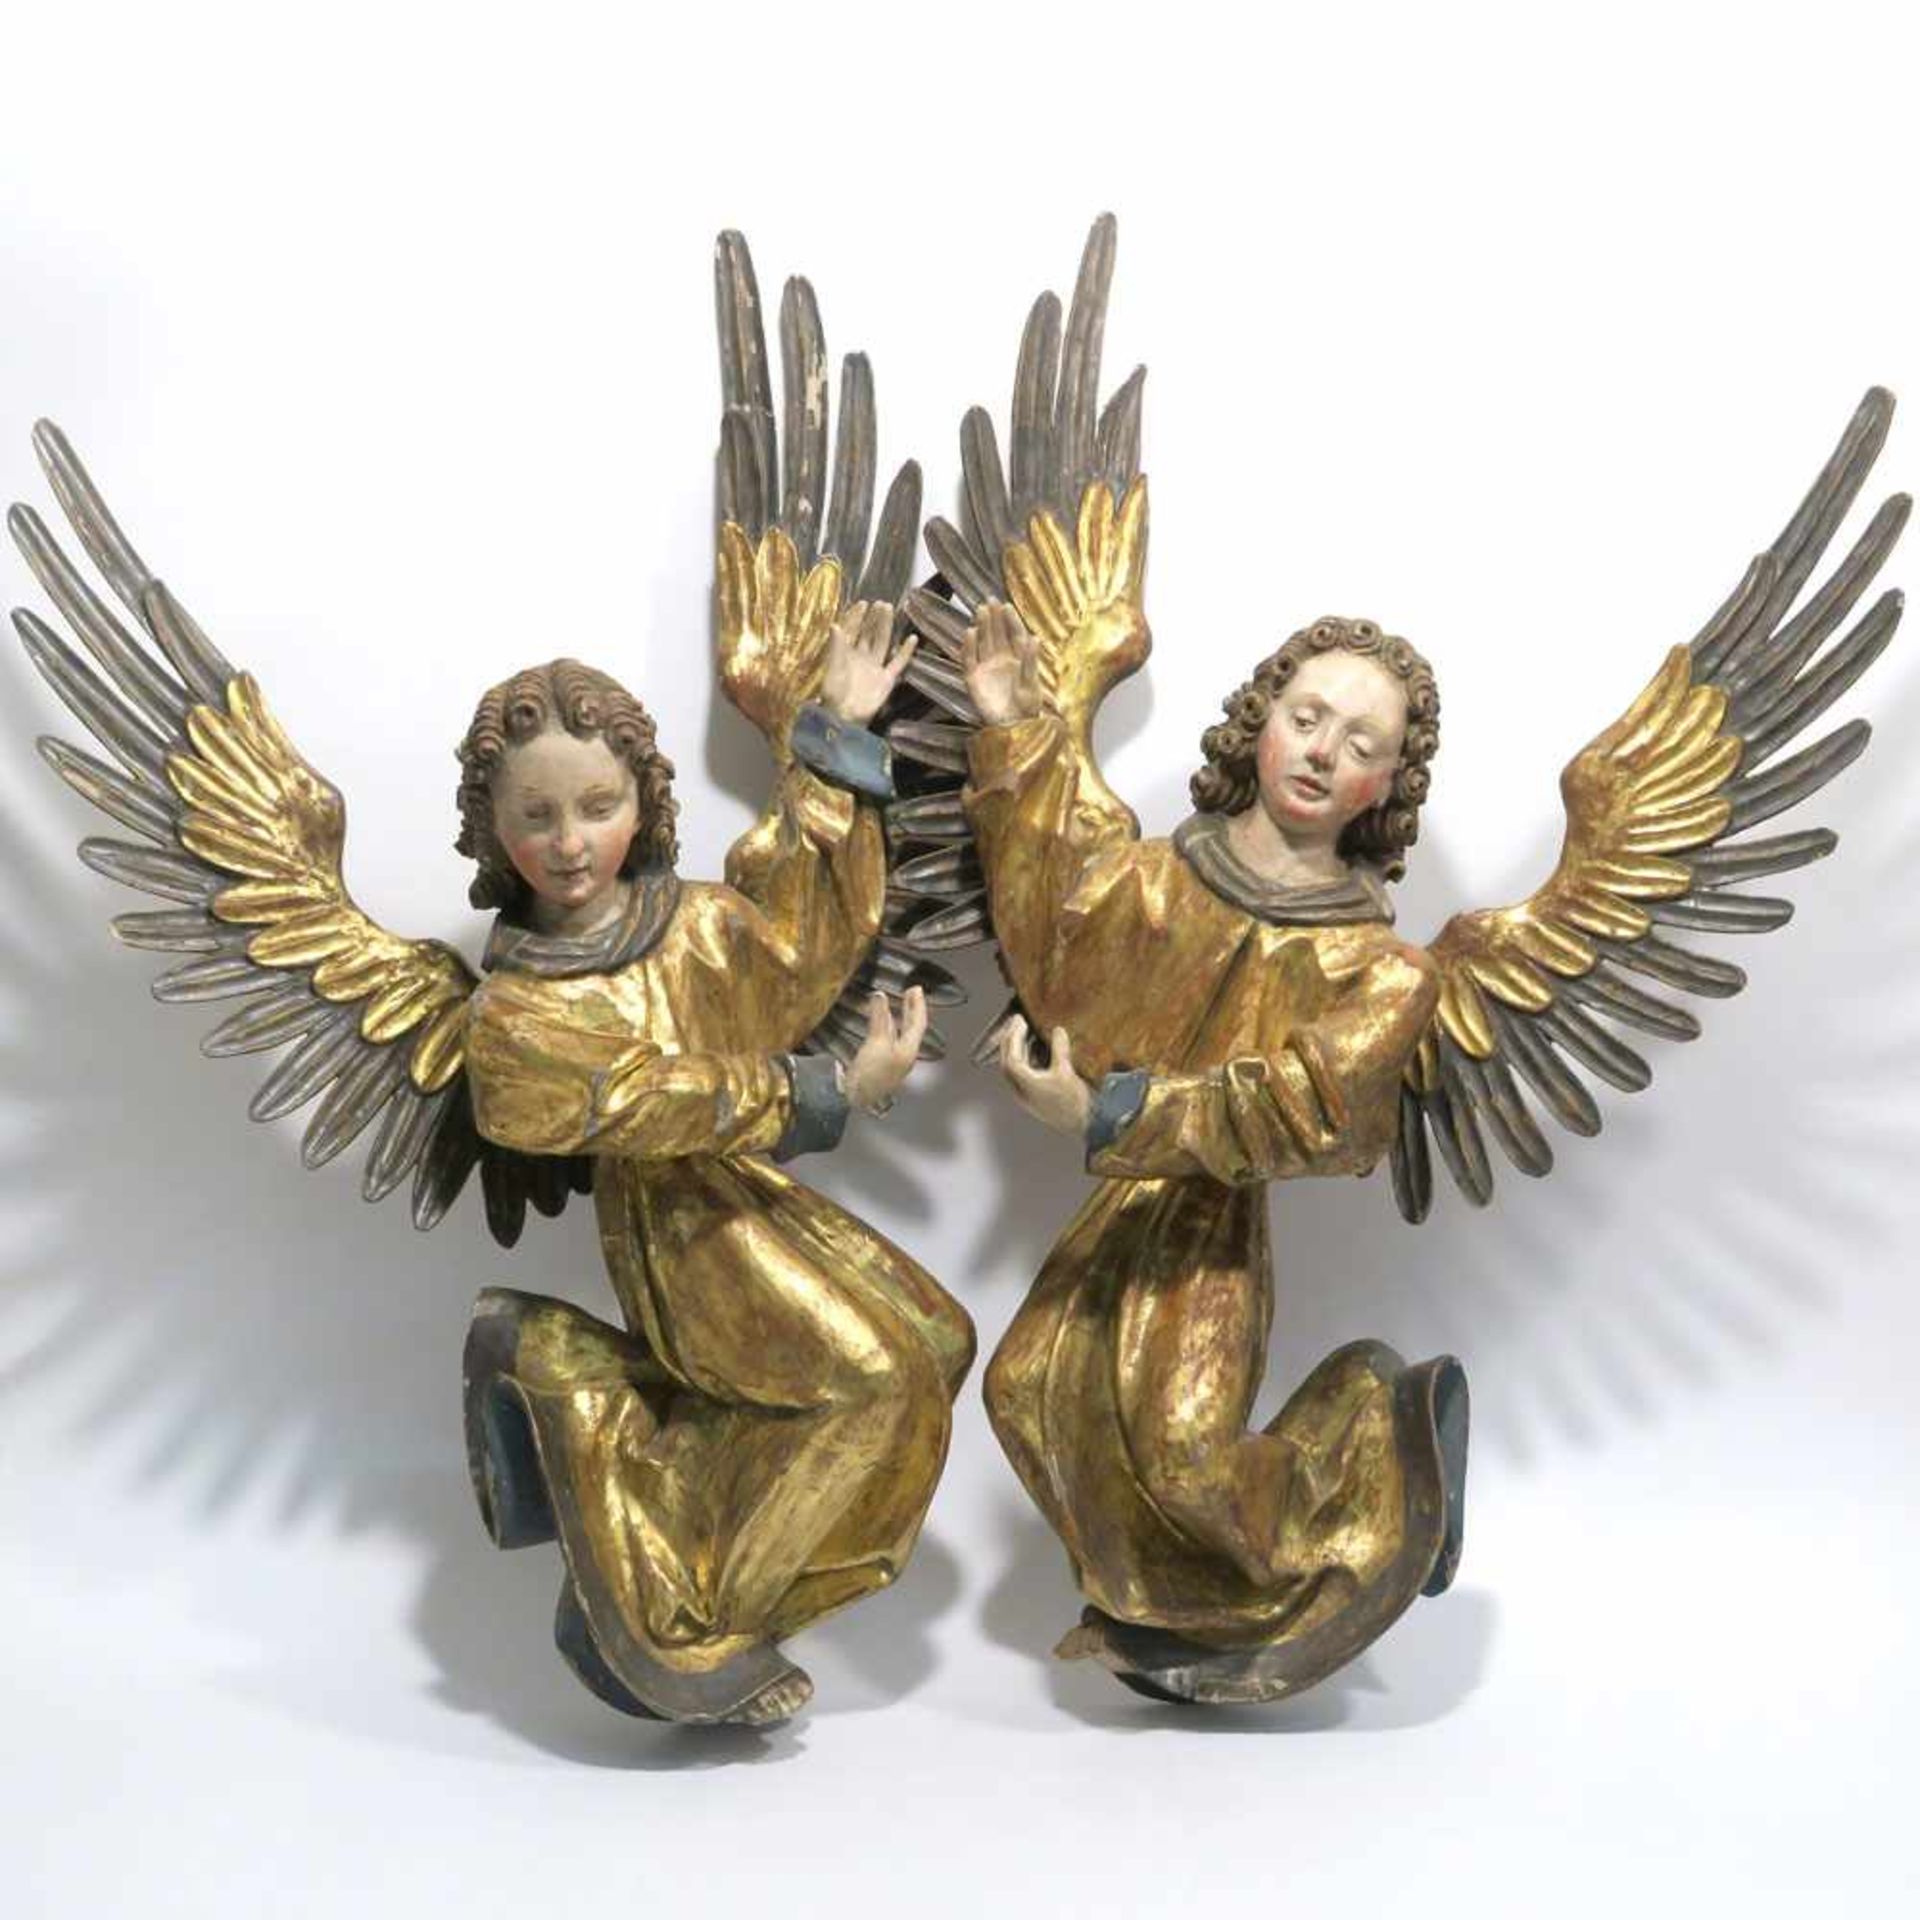 Ein Paar EngelHolz, geschnitzt, Farb- und Goldfassung. Tlw. rep., besch. H. ca. 64 cm.- - -26.00 %